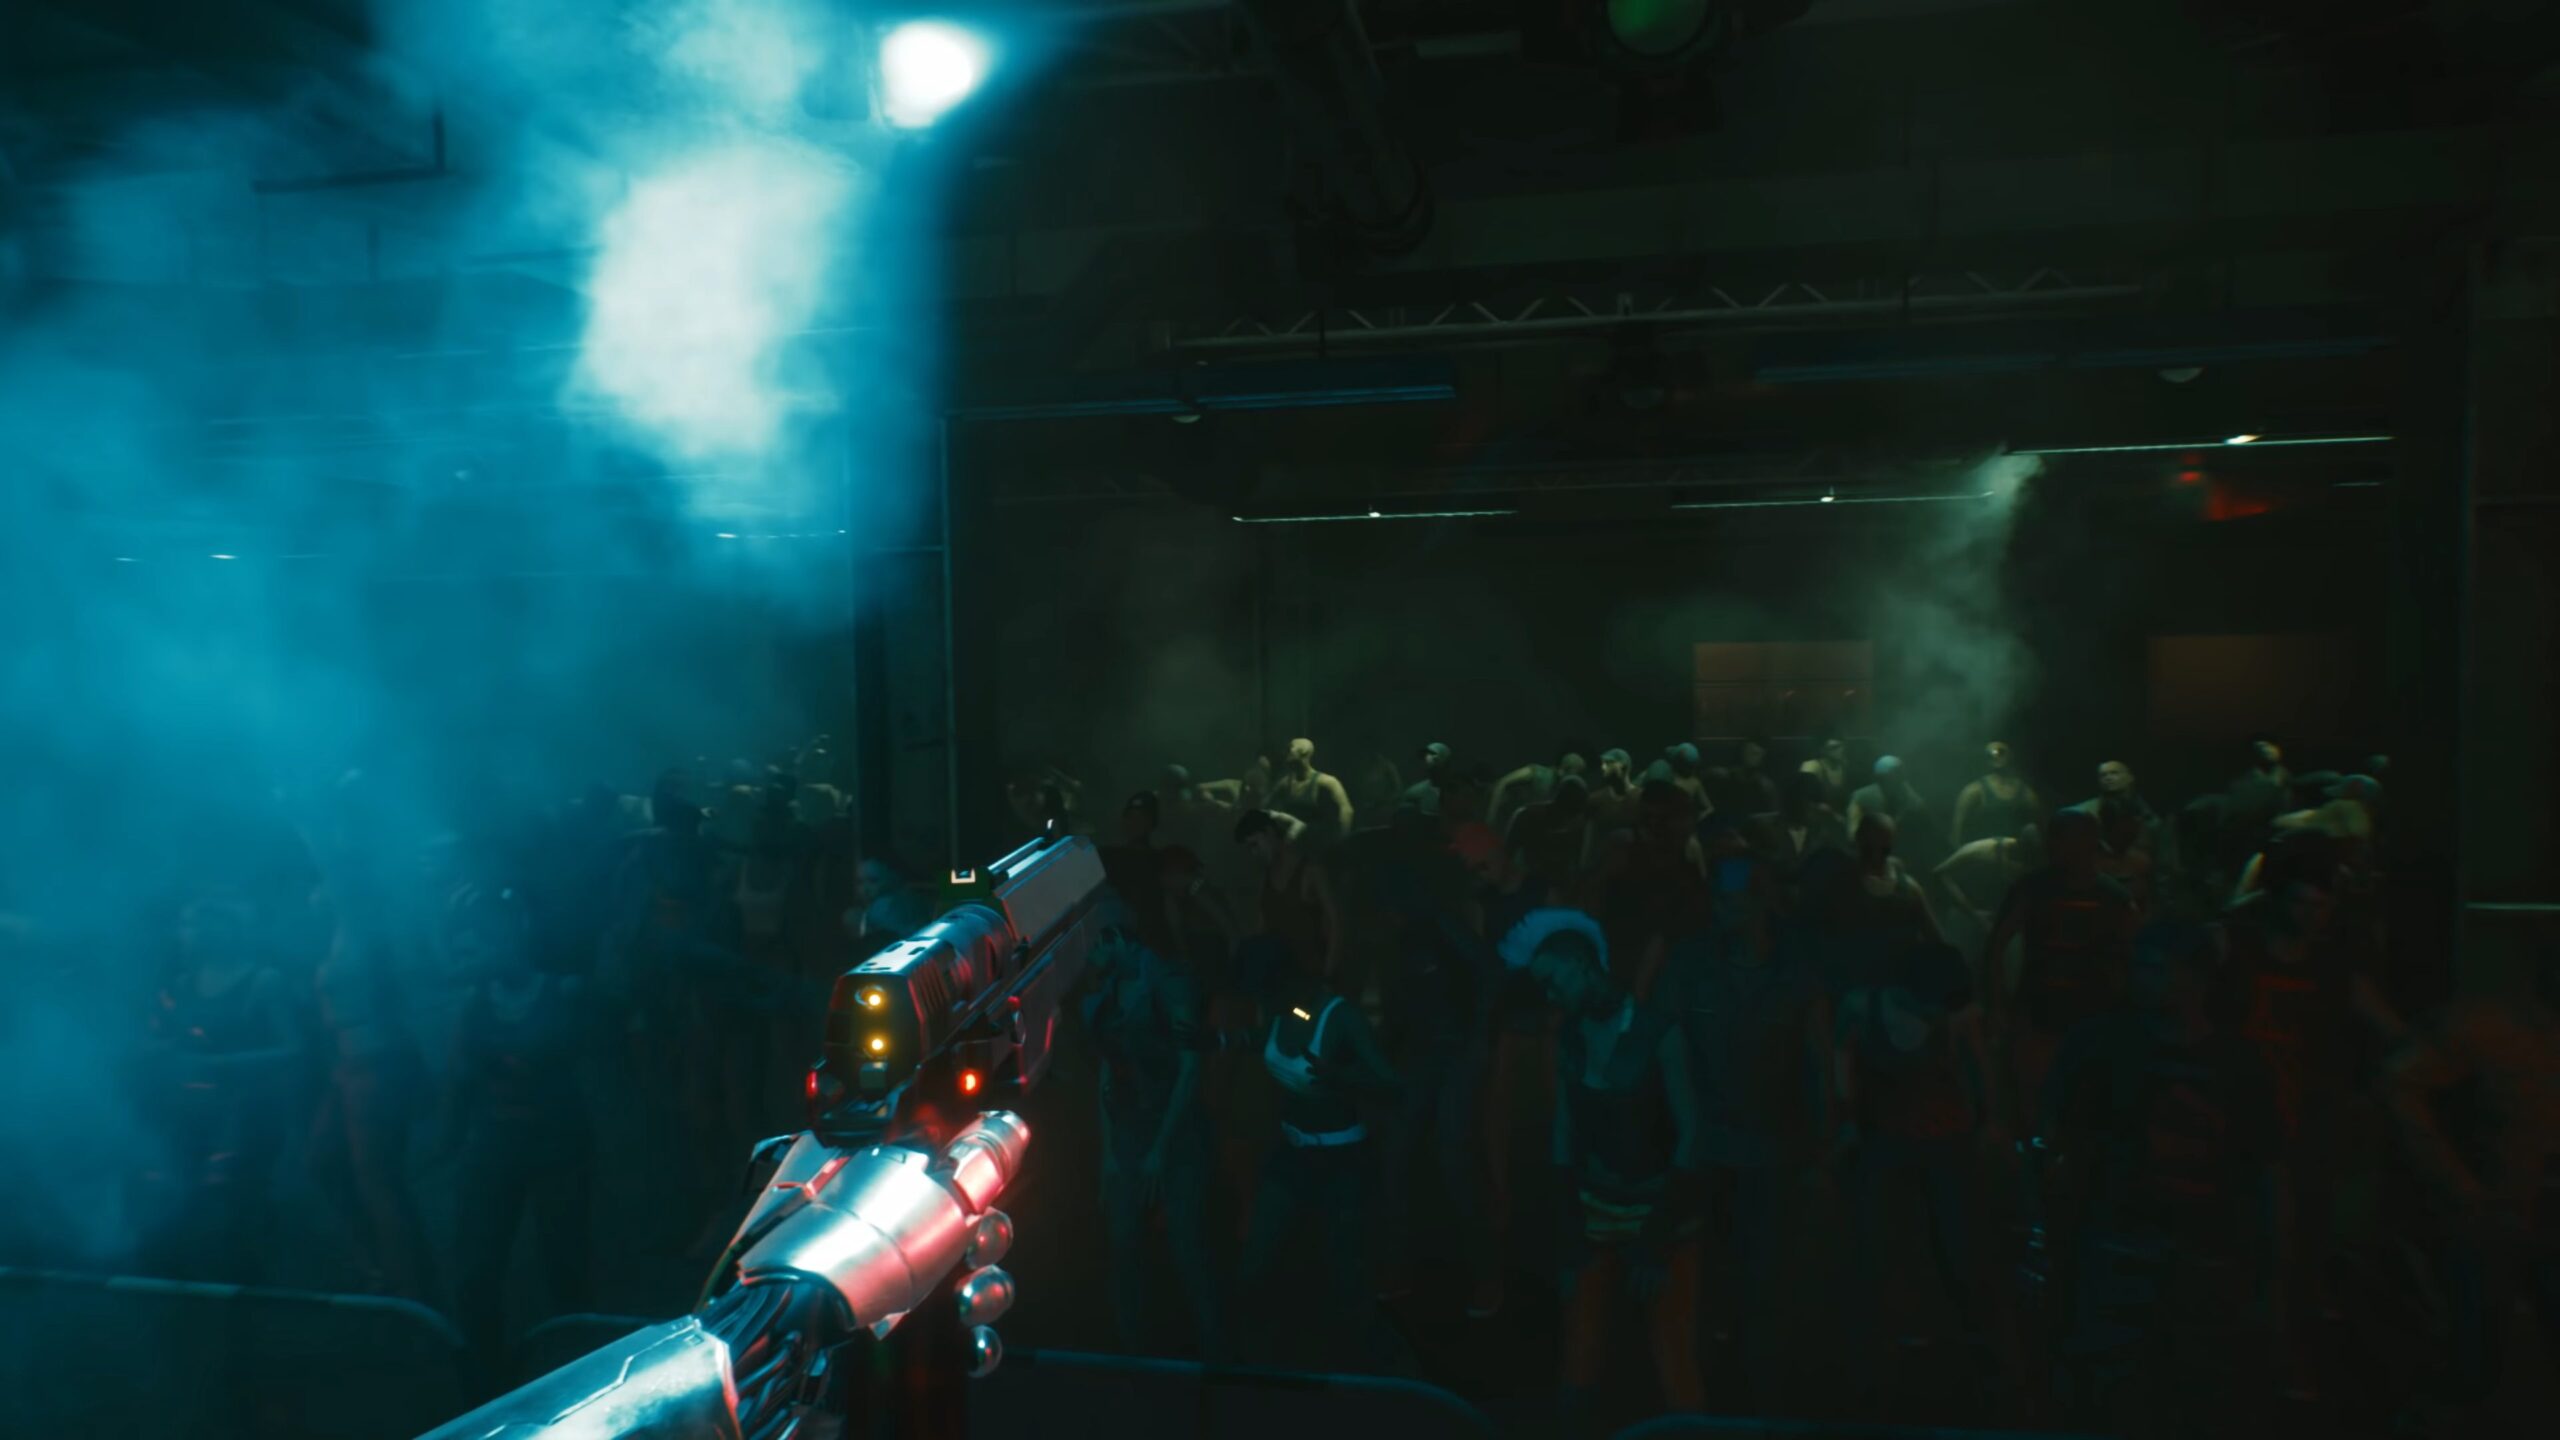 Cyberpunk 2077 Night City Wire 2 Johnny Silverhand Points Gun At Crowd